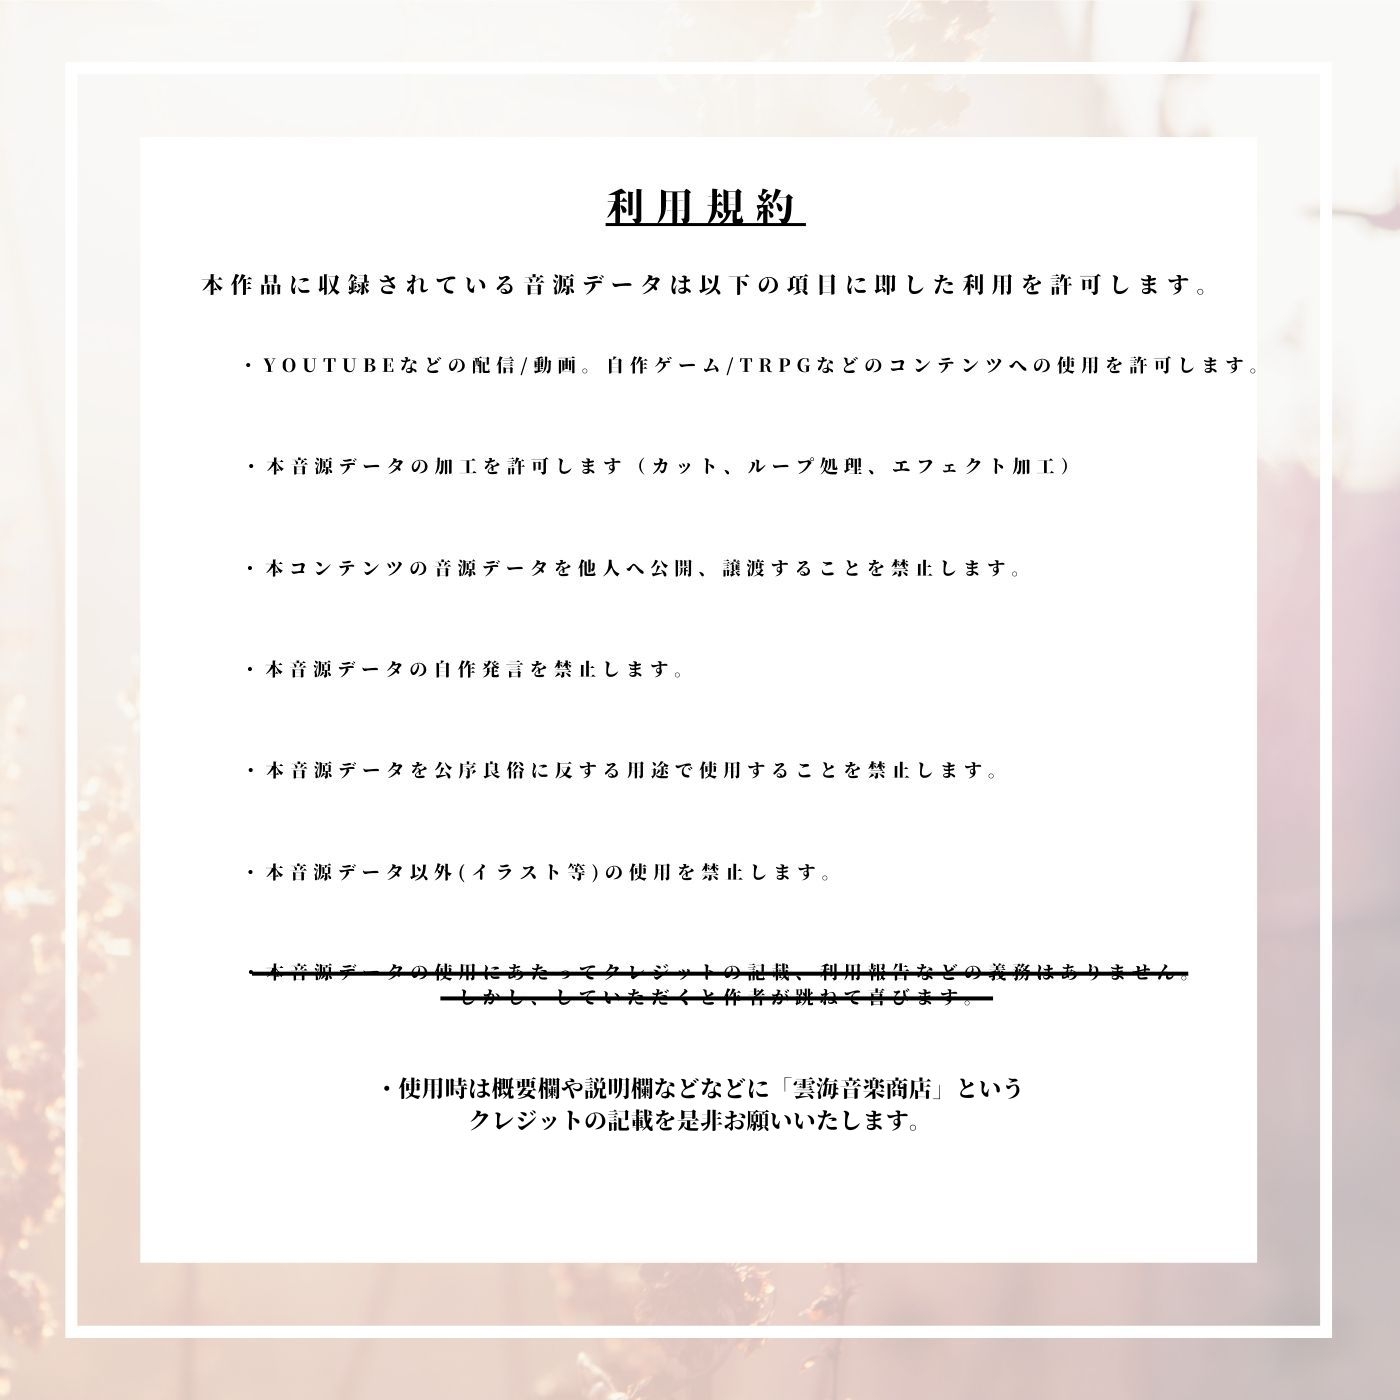 【格安25曲!】TRPG特化型BGM素材集 Vol.4 Vol.5バンドル!